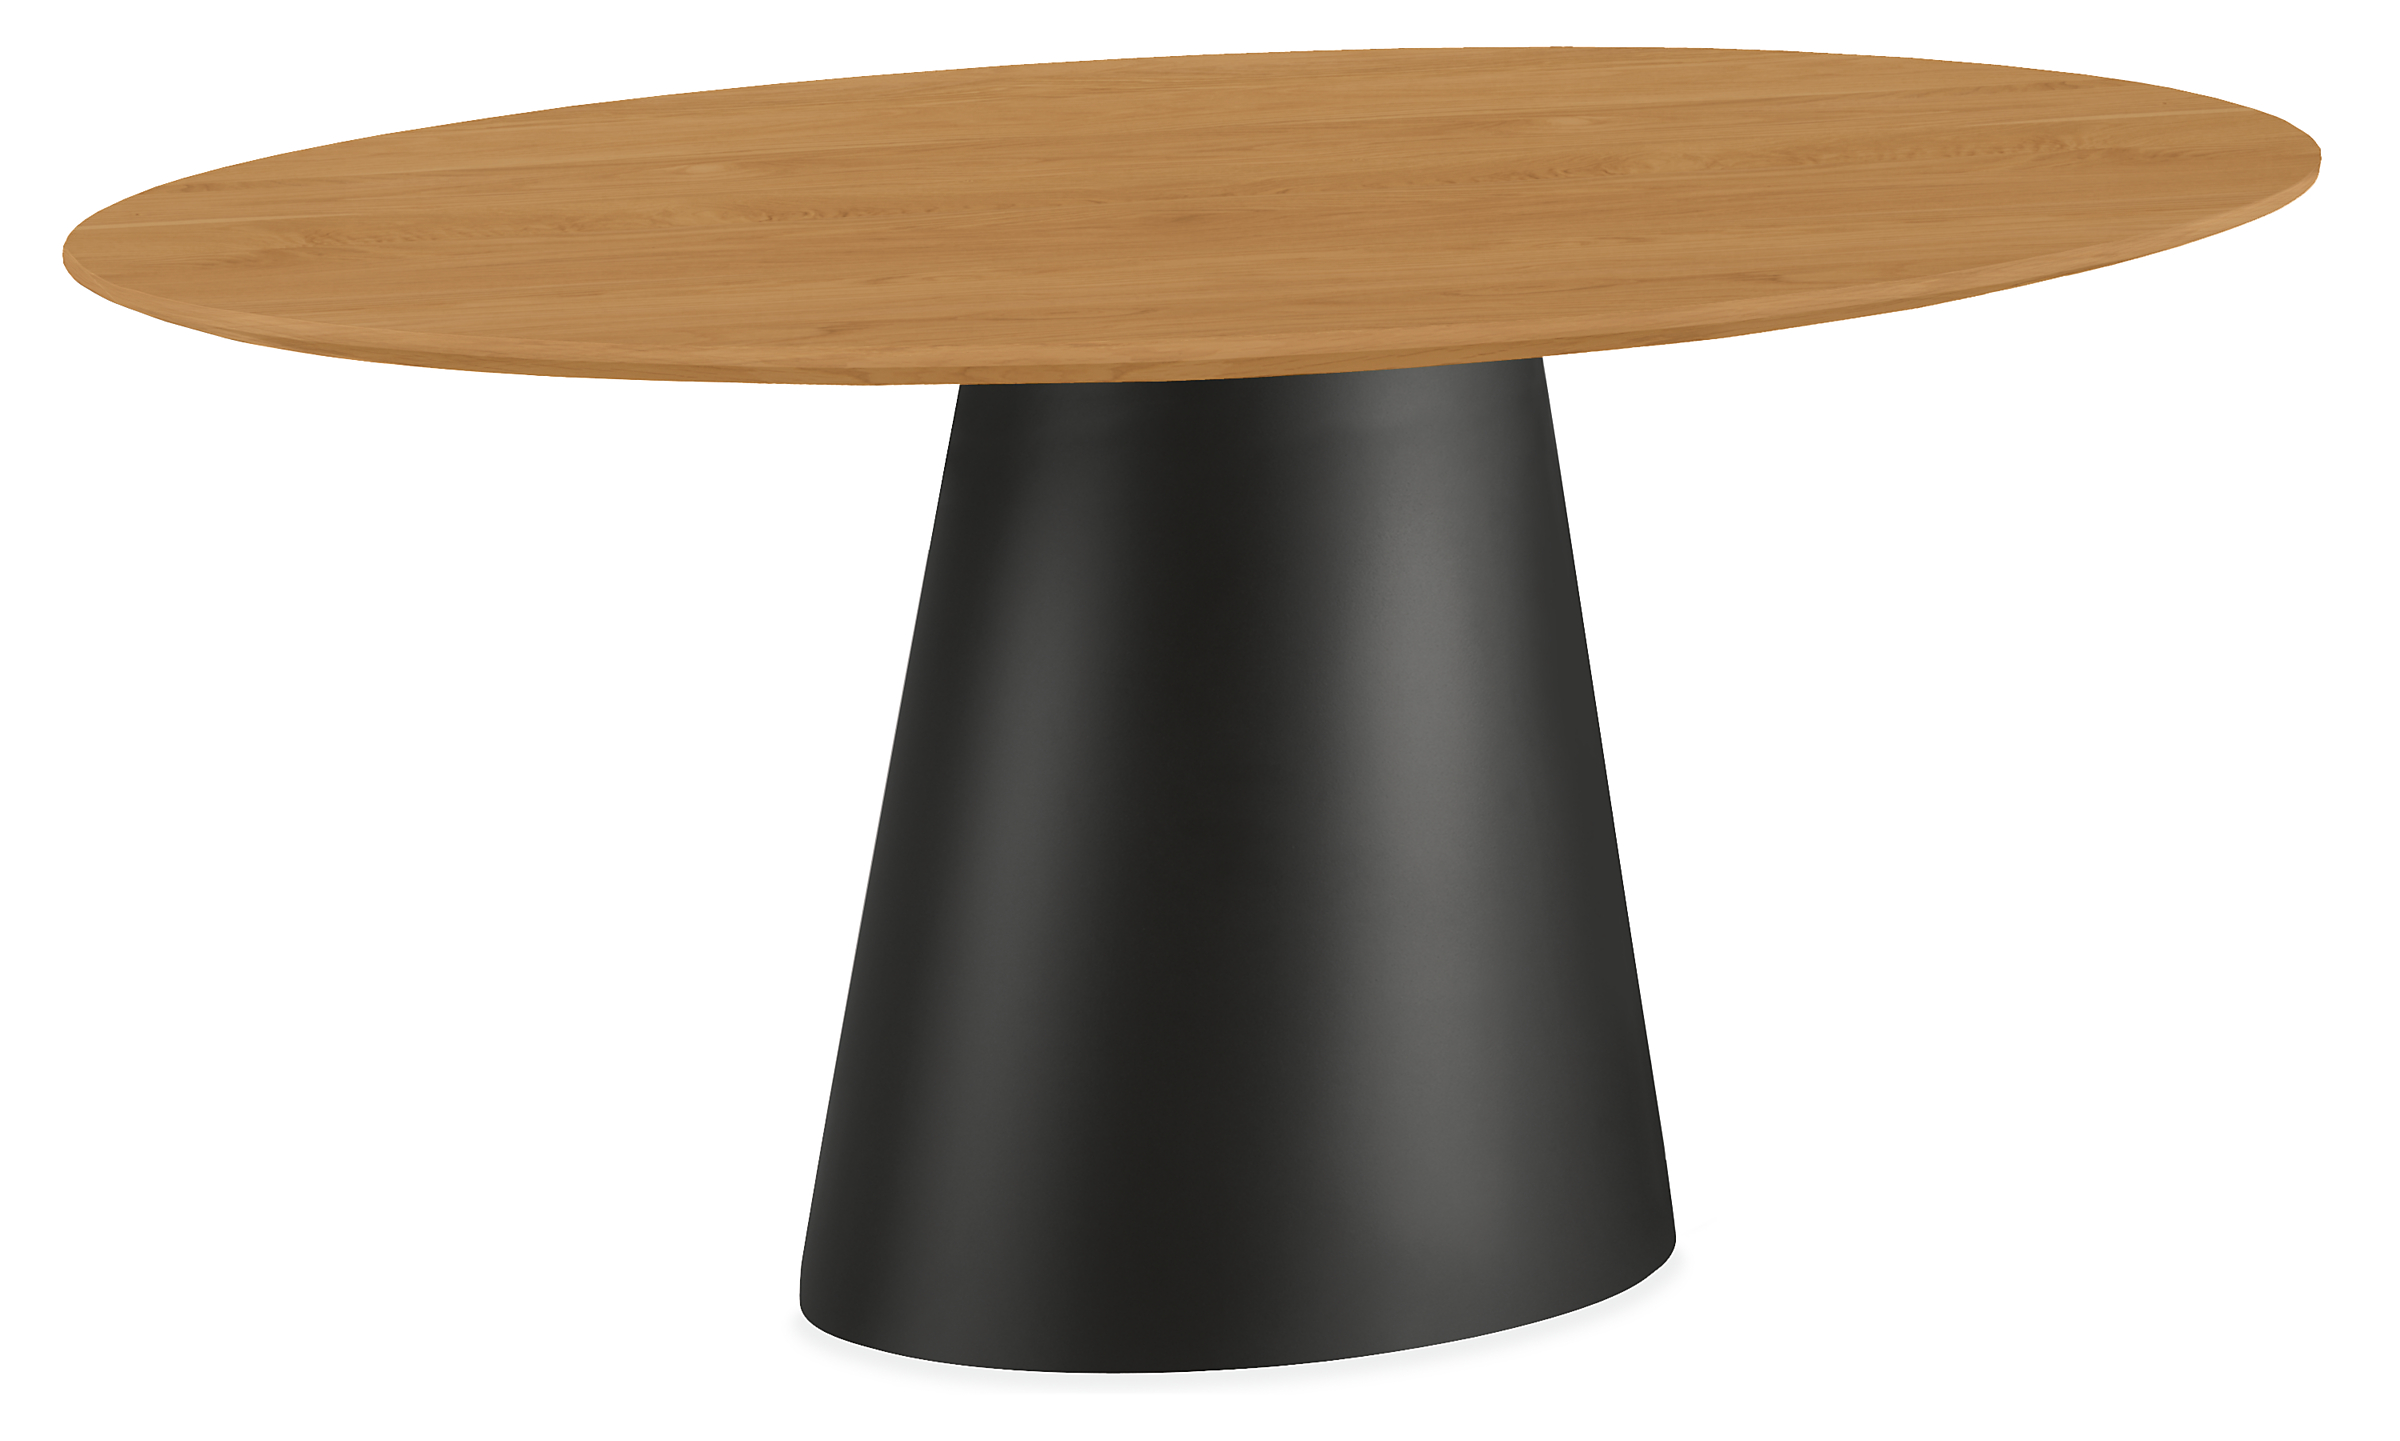 Decker 60w 37d Oval Table